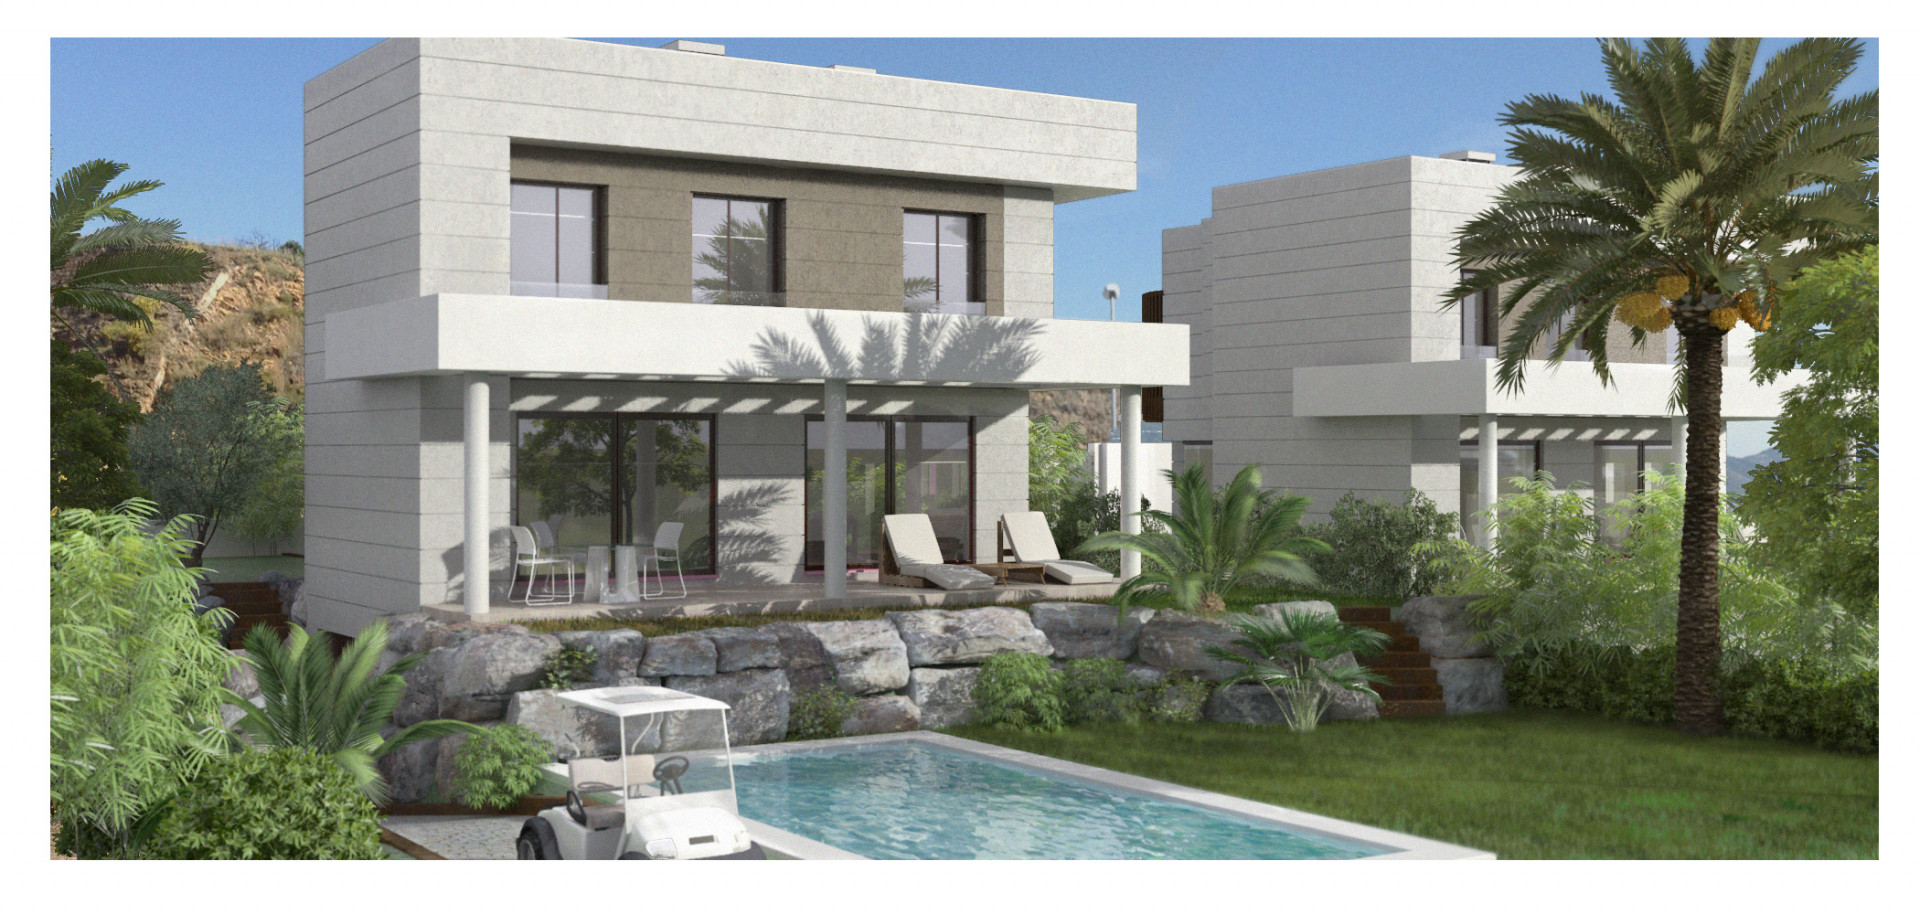 Ganga! Construcción de villas modernas nuevas en primera linea de golf en venta en Mijas - Costa del Sol